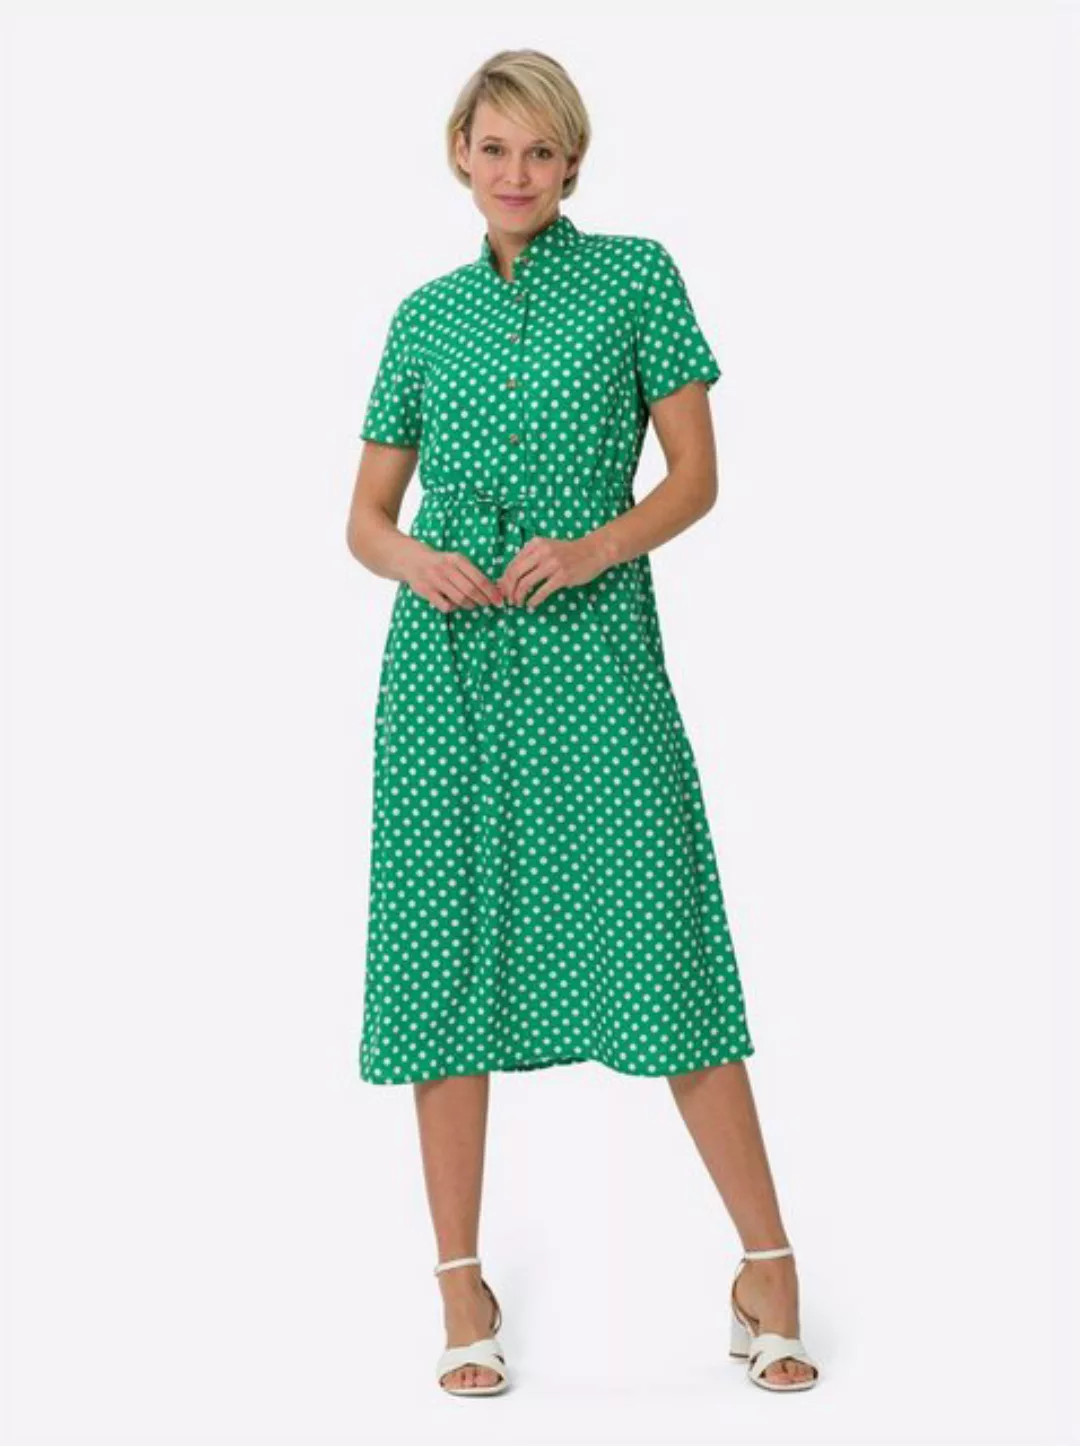 Sieh an! Etuikleid A-Linien-Kleid günstig online kaufen